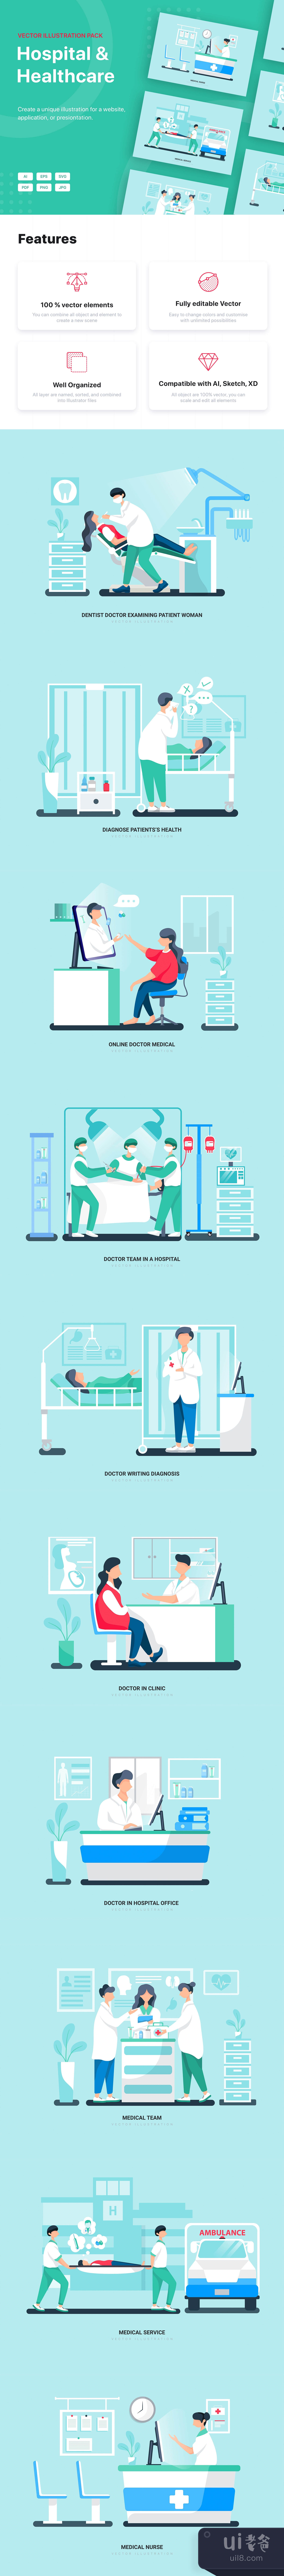 狮子座 - bHospital and Healthcare Vector Scenes (Leo插图